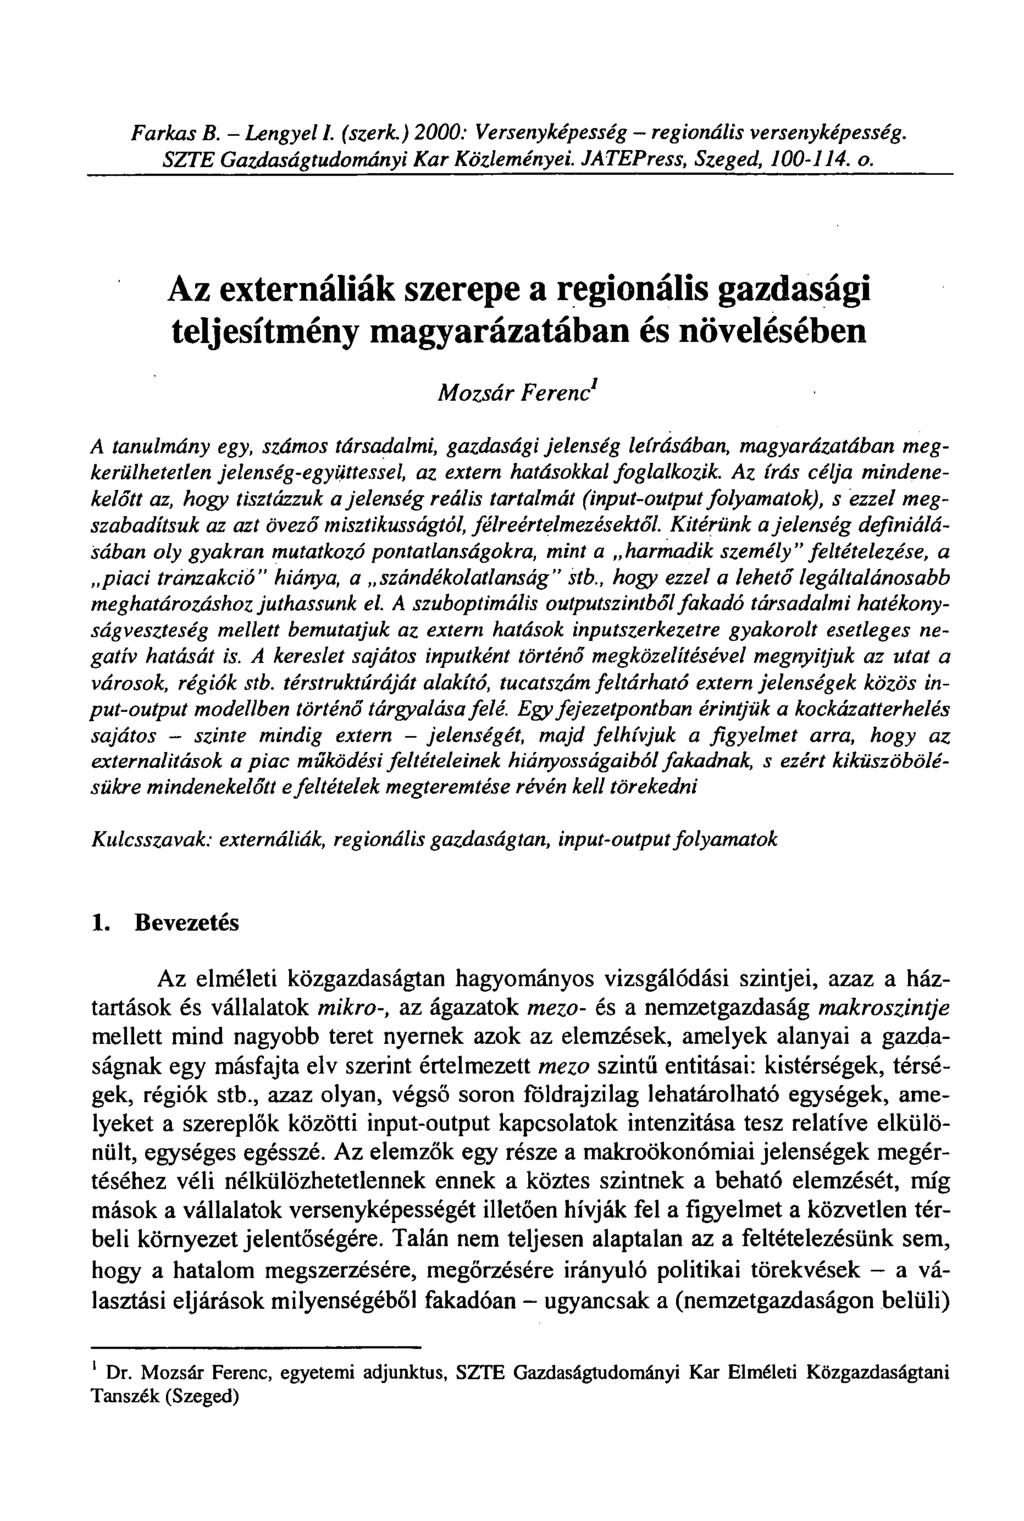 Farkas B. - Lengyel I. (szerk.) 2000: Versenyképesség - regionális versenyképesség. SZTE Gazdaságtudományi Kar Közleményei. JATEPress, Szeged, 100-114. o.